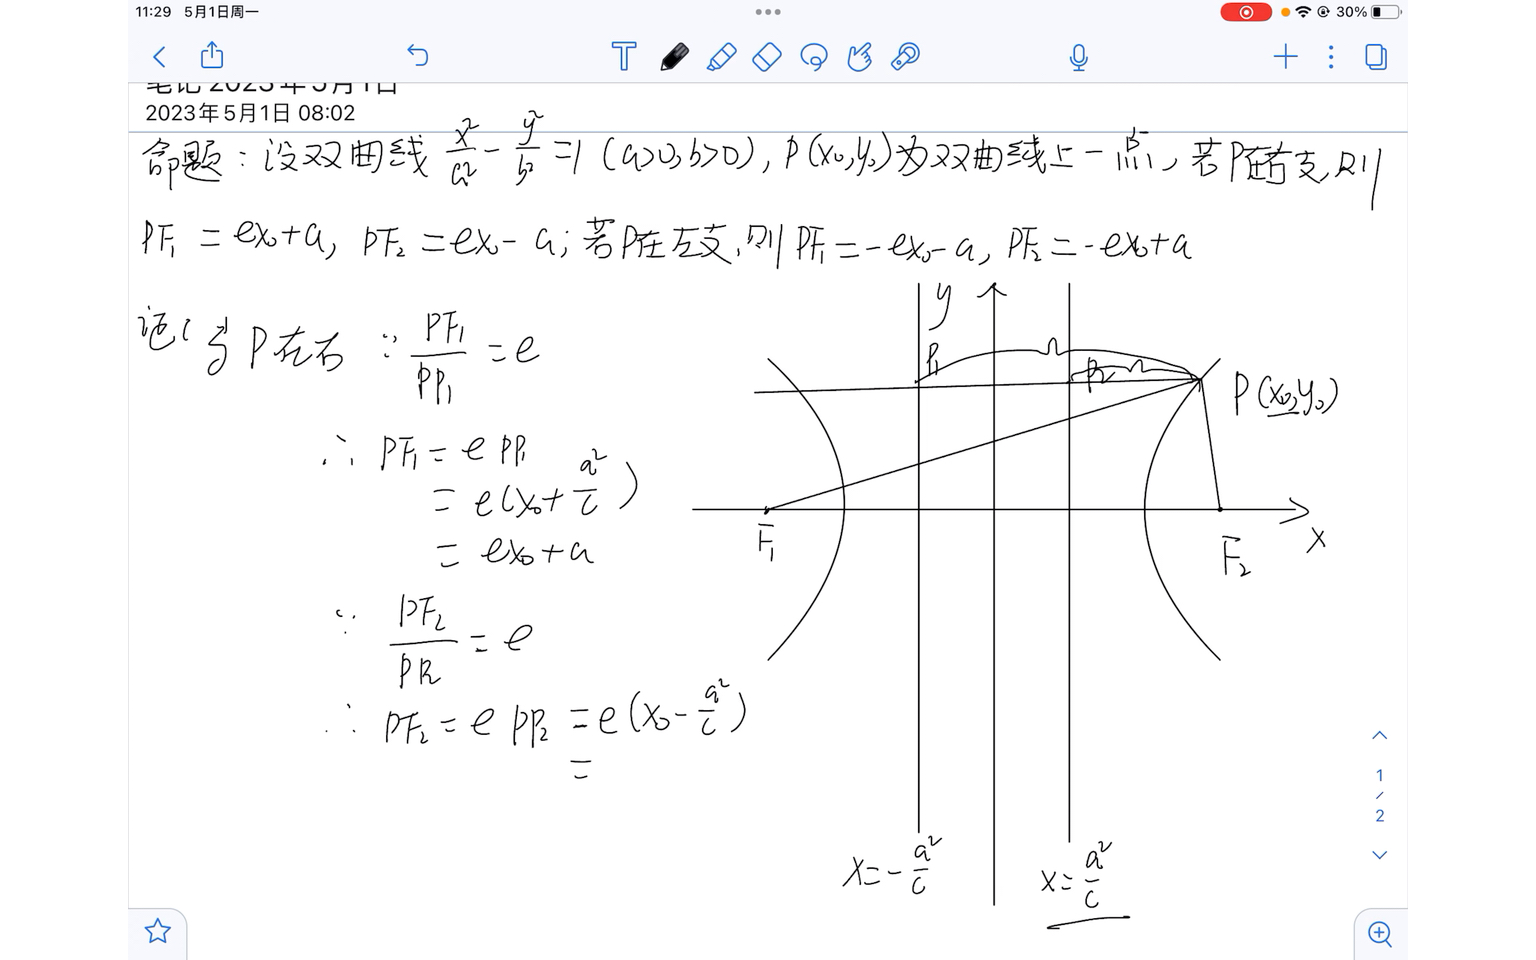 证明了双曲线的焦半径公式(单变量为横坐标),细化版